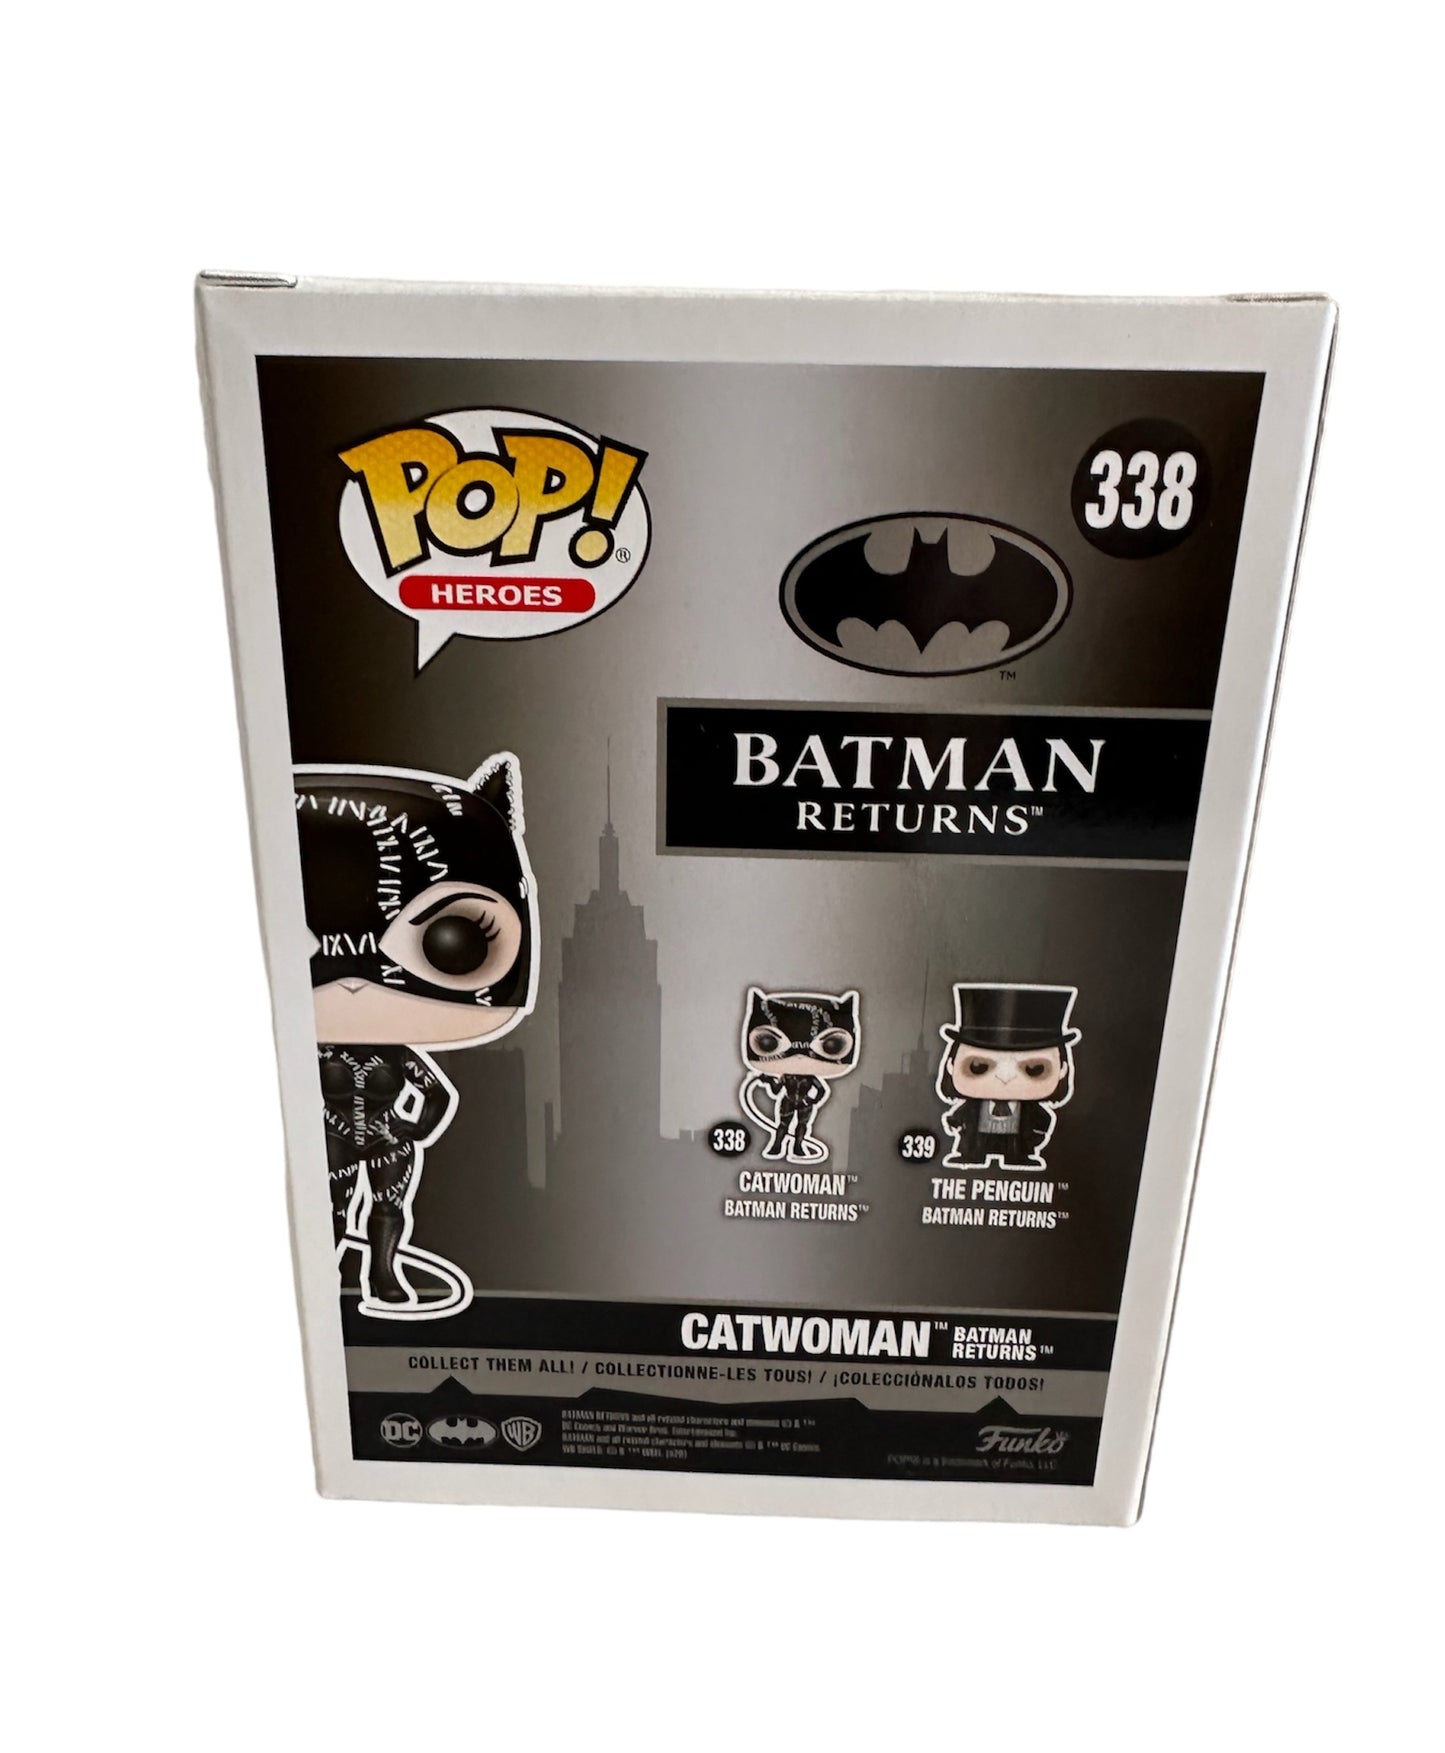 POP! Heroes 2020 Batman Returns Pop Vinyl Figure - Catwoman No. 338 - Brand New Shop Stock Room Find